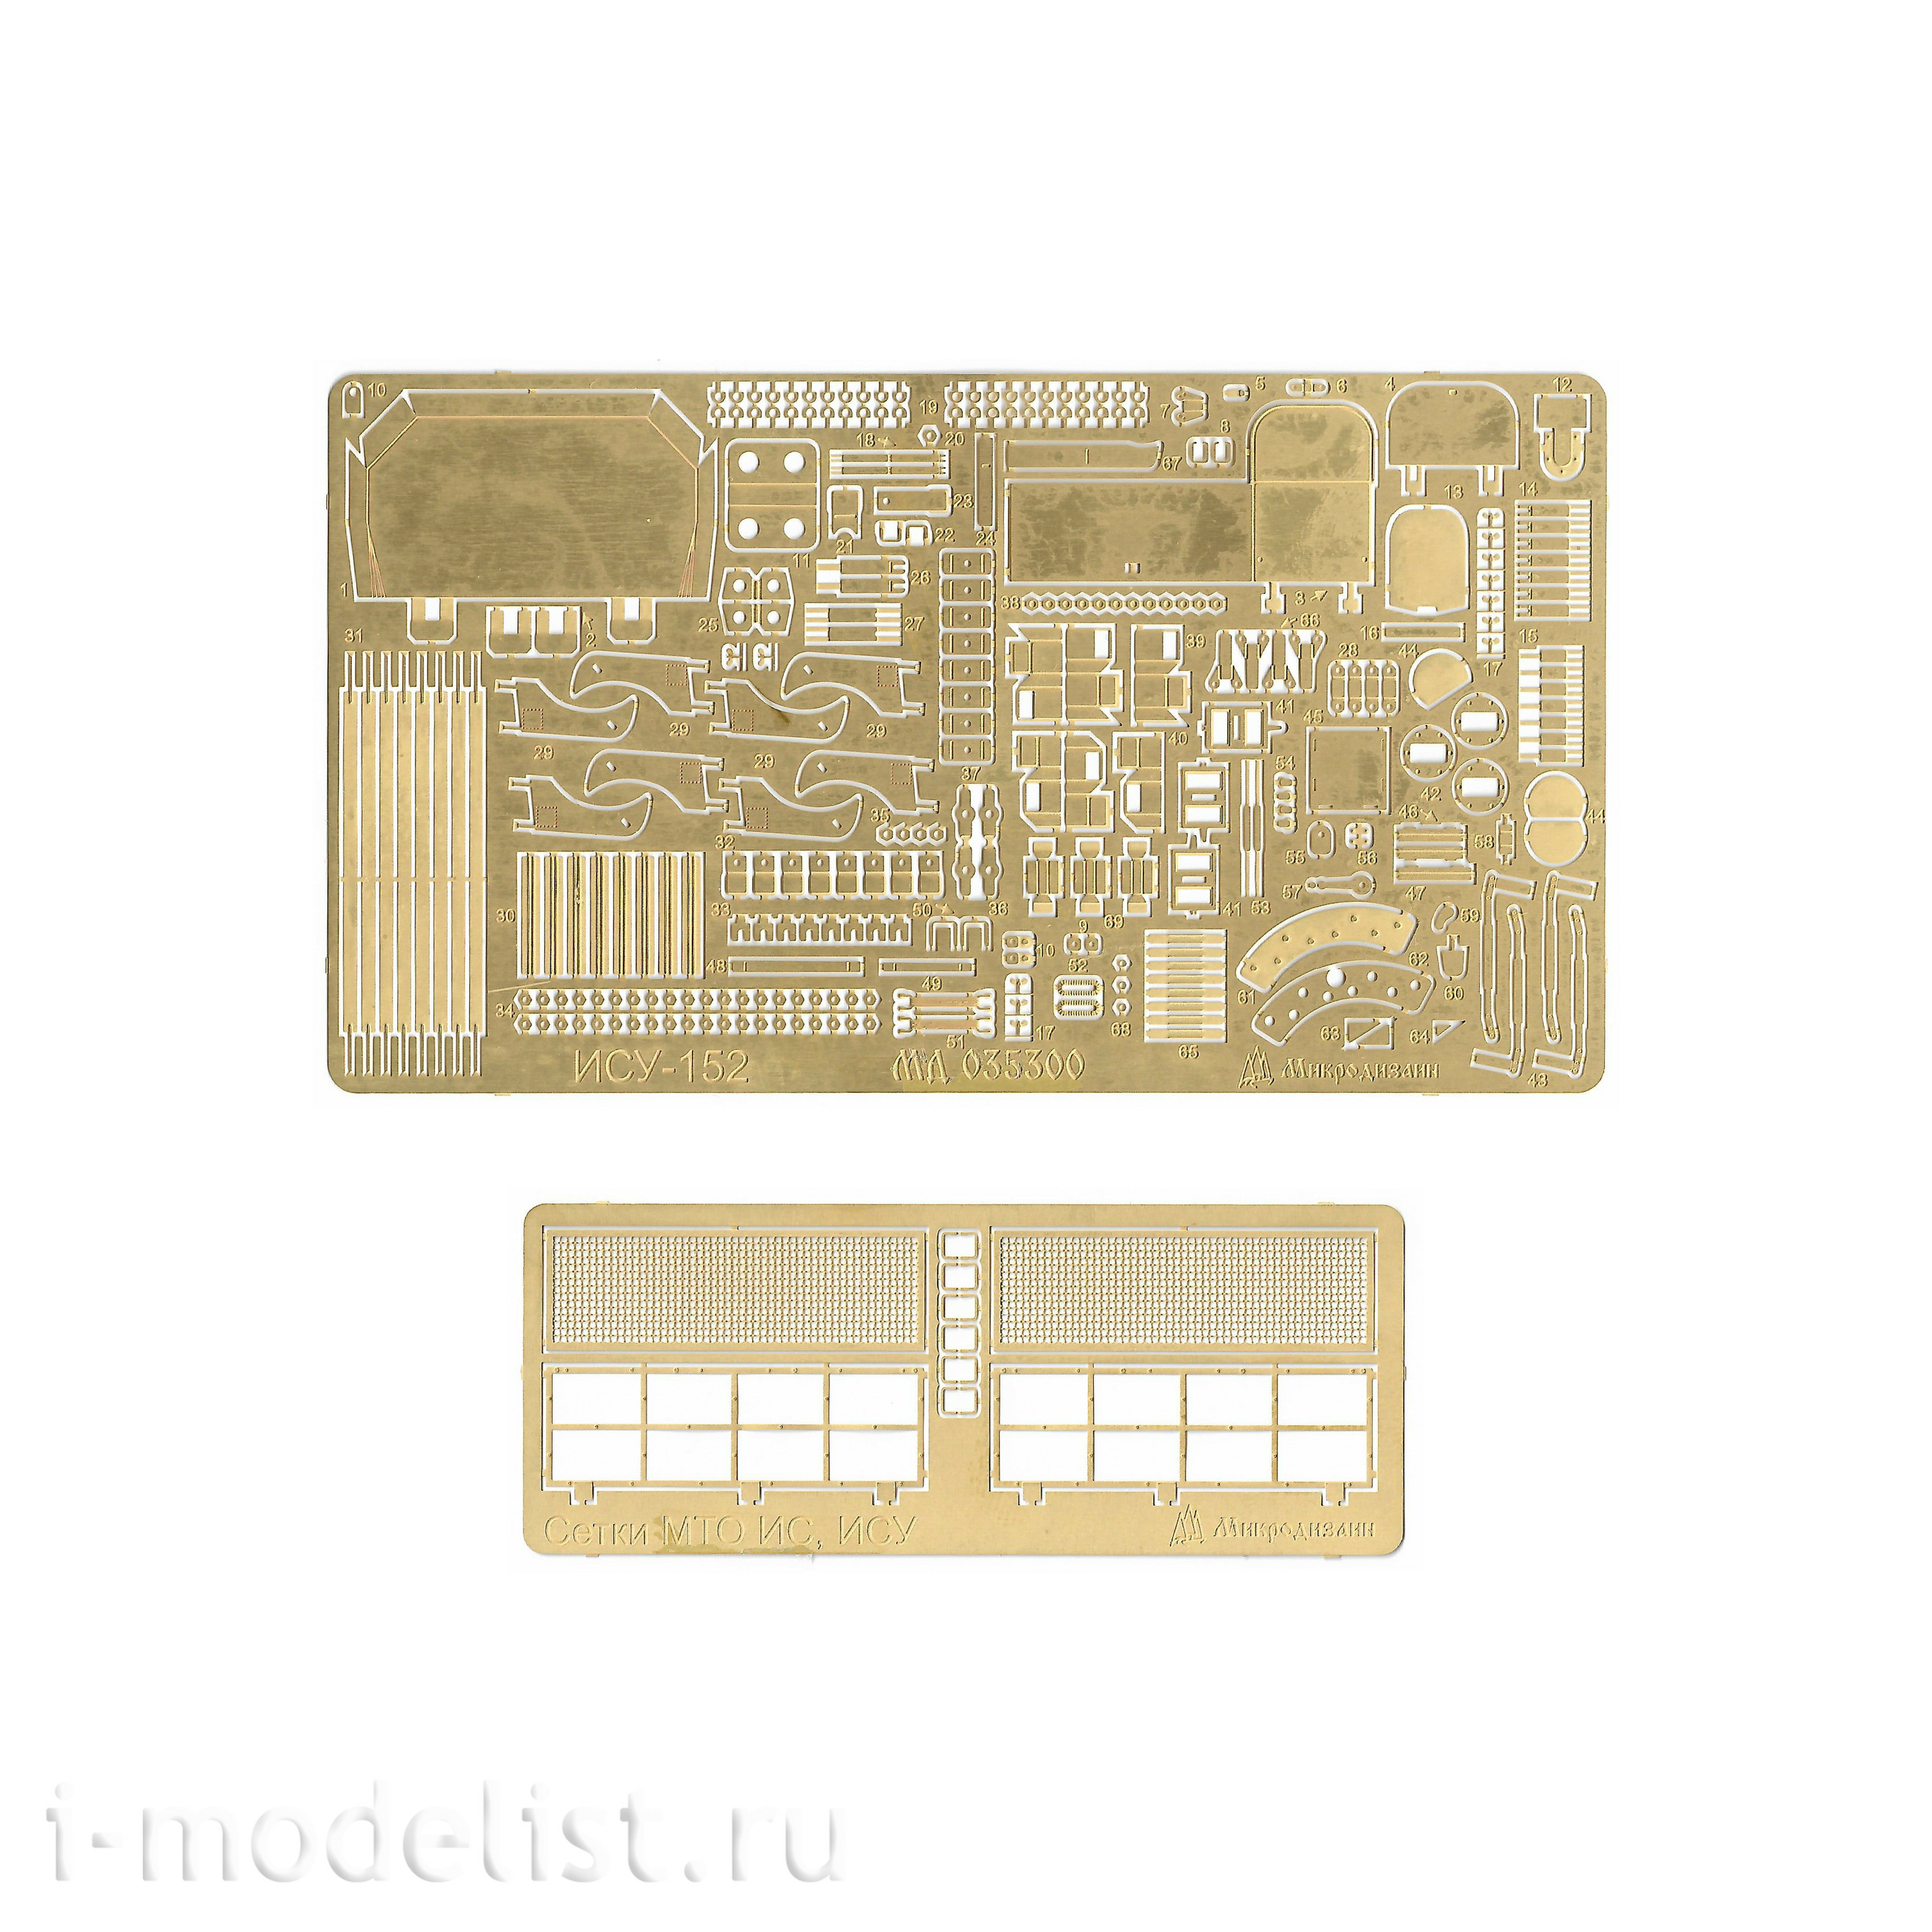 035300 Microdesign 1/35 ISU-152 Zvezda, Tamiya 